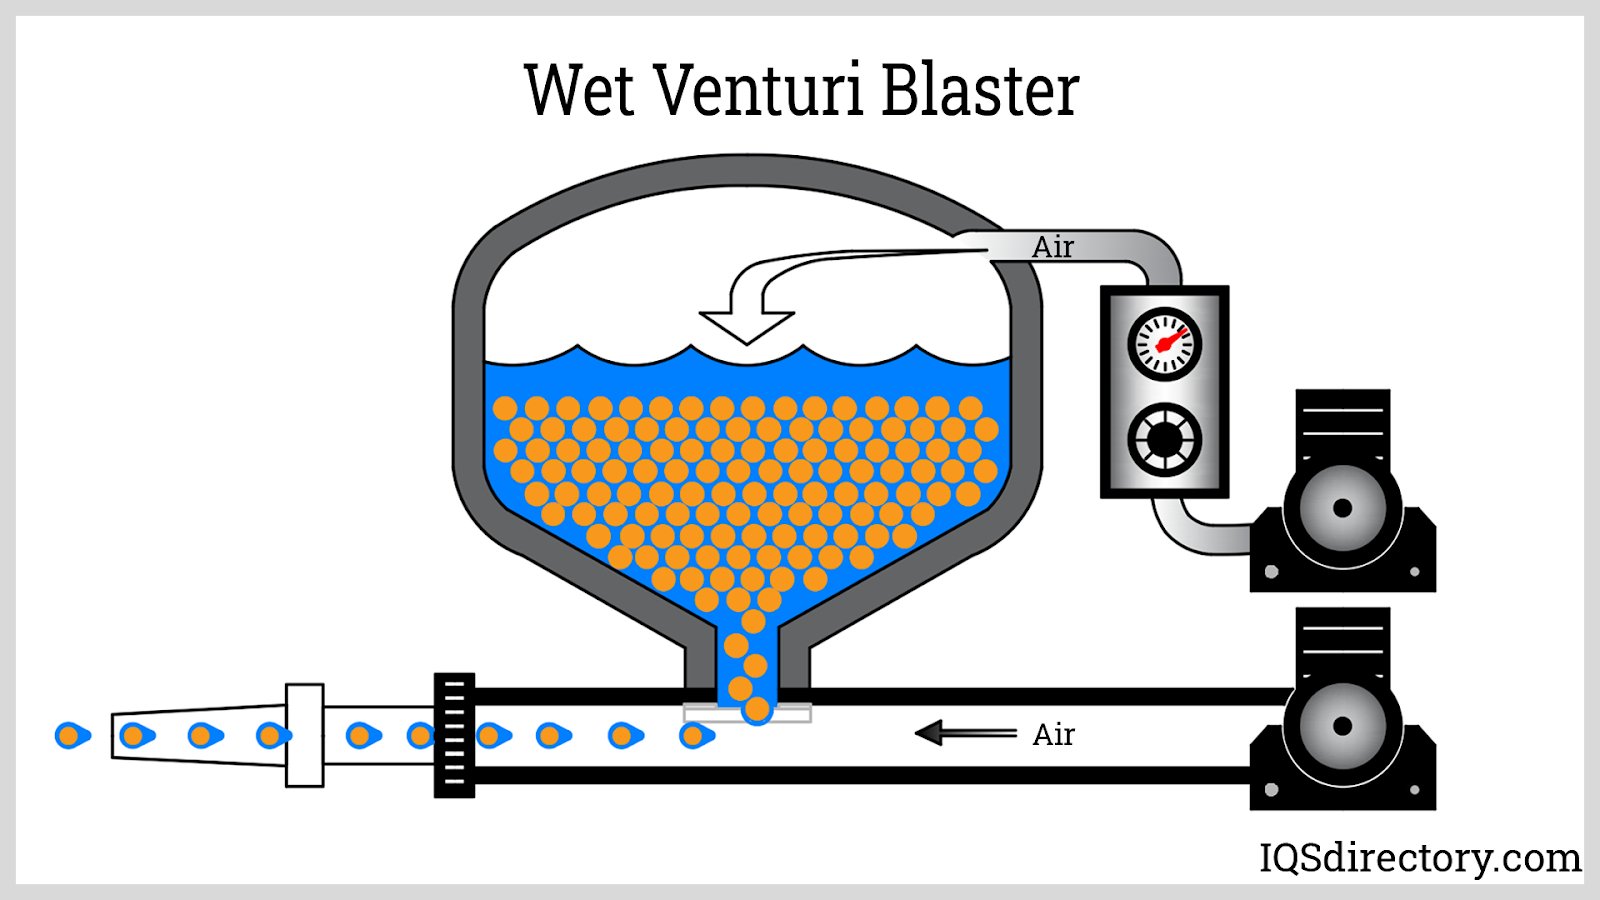 Wet Venturi Blaster